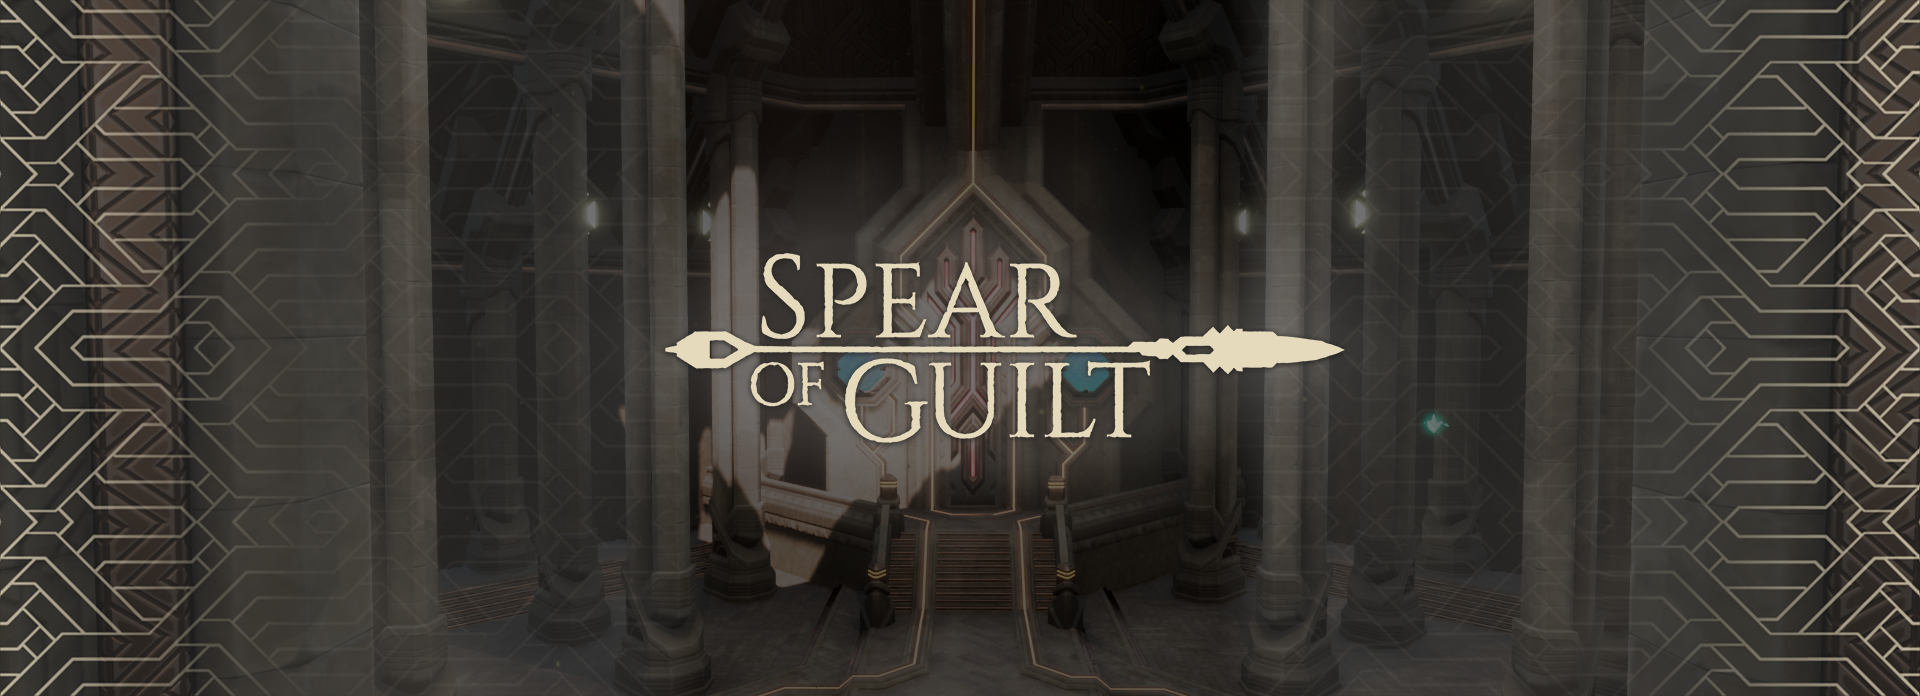 Spear of Guilt